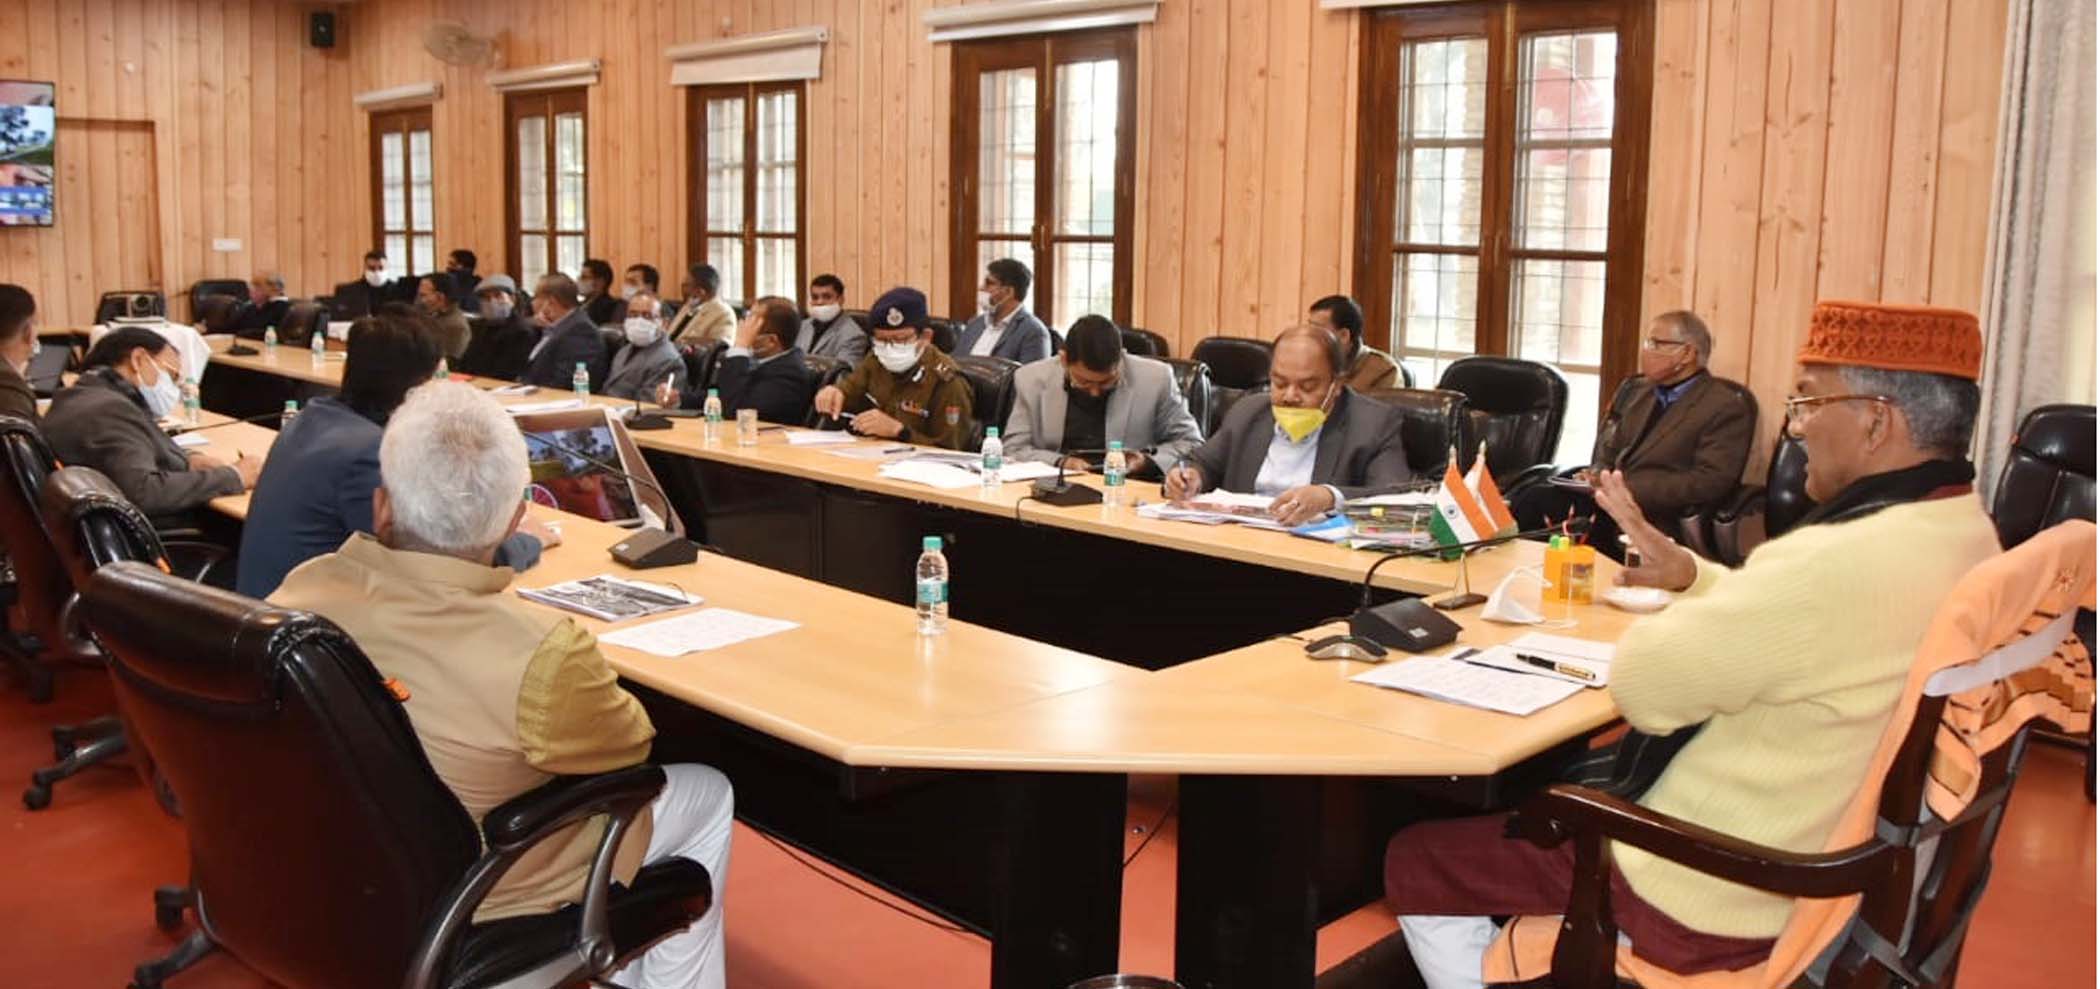  मुख्यमंत्री रावत ने कुम्भ मेले की तैयारियों की समीक्षा करते हुए अधिकारियो को दिए ये निर्देश | Nation One